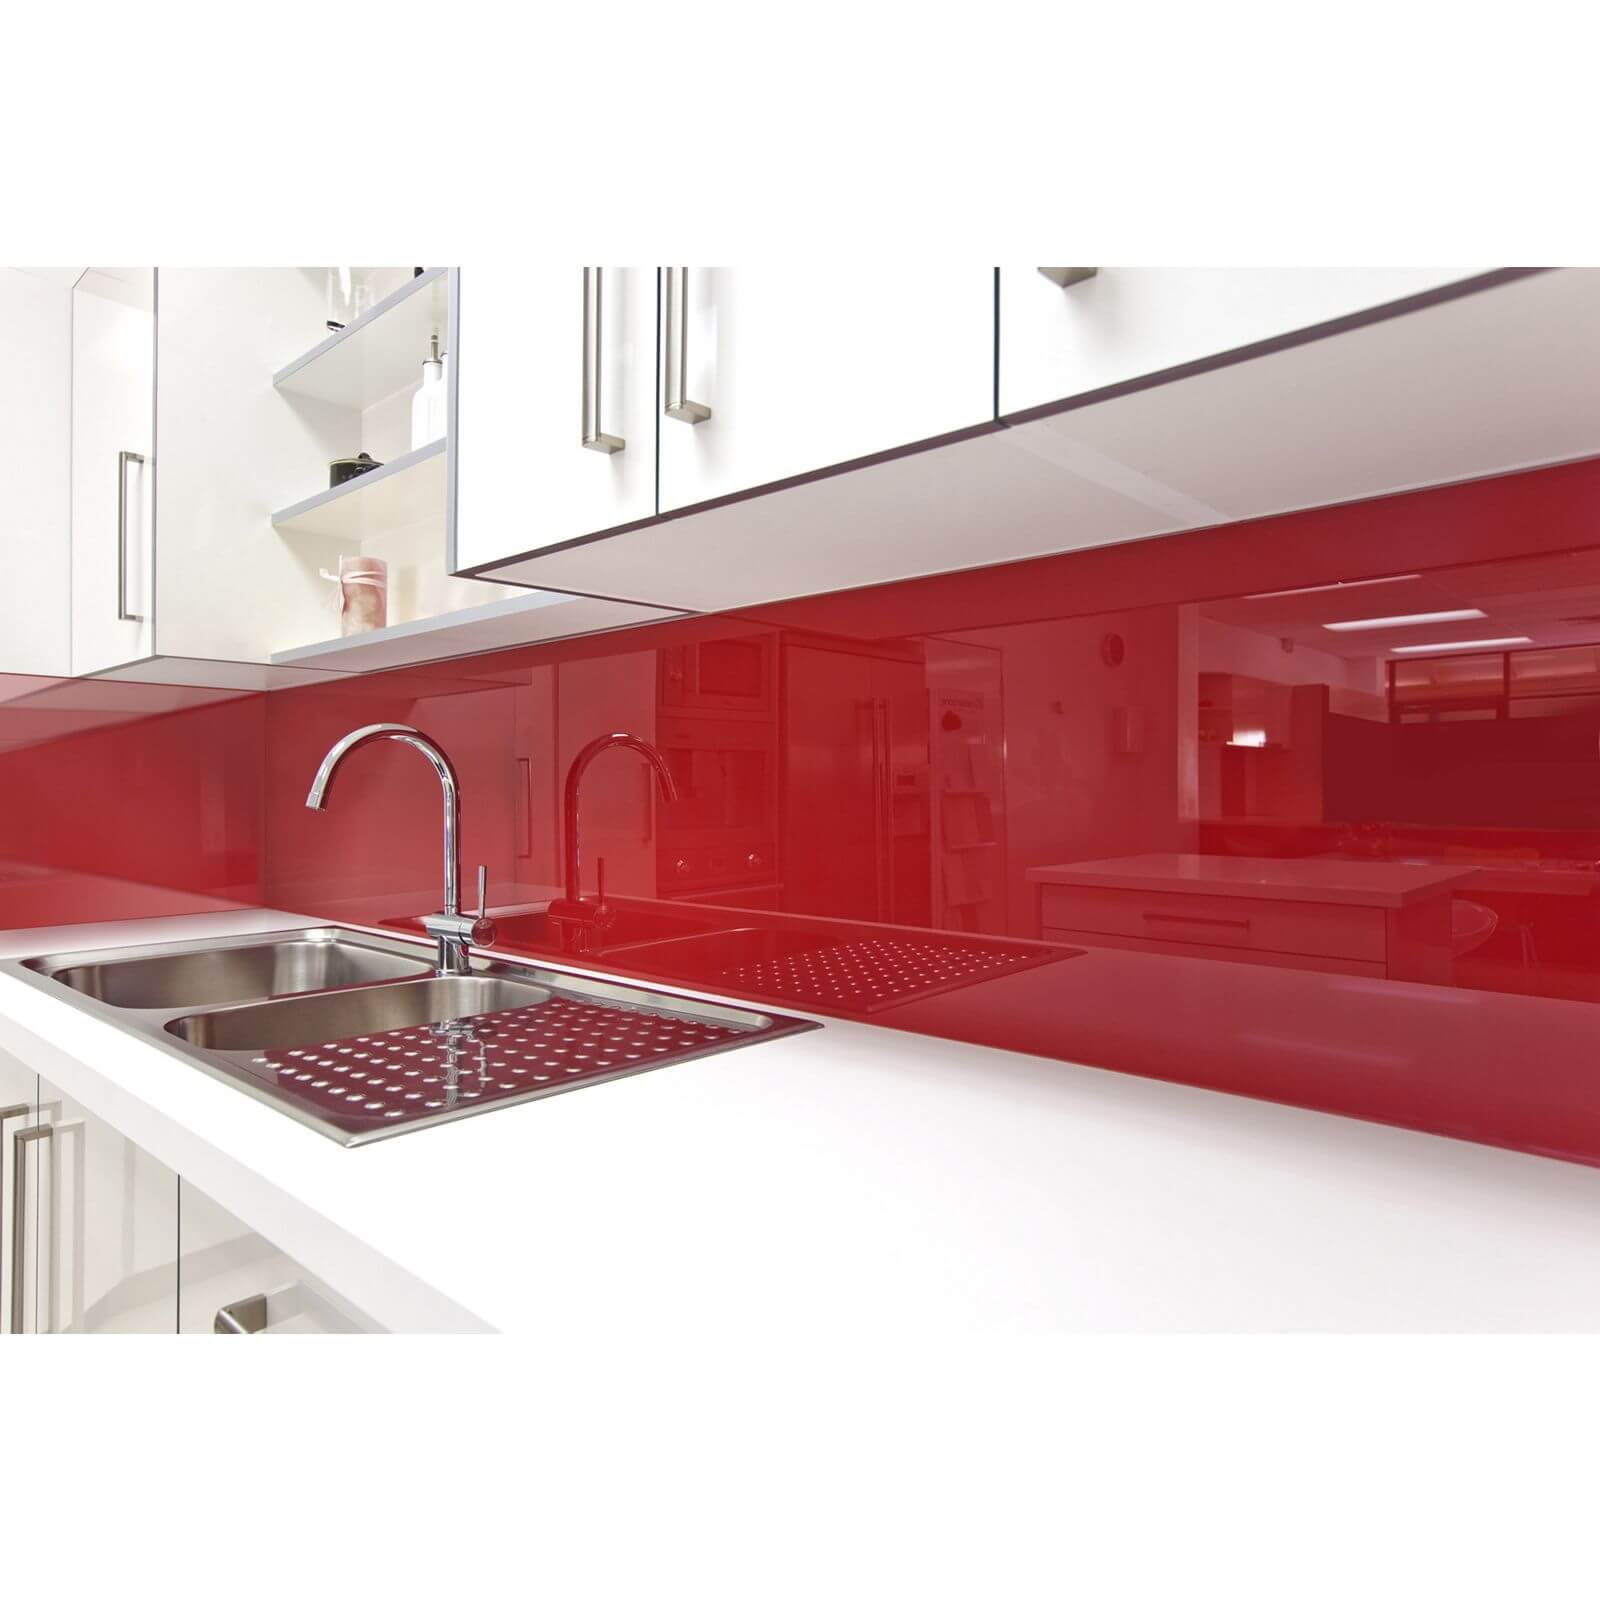 Zenolite Acrylic Kitchen Splashback Panel - 2440 x 605 x 4mm - Red